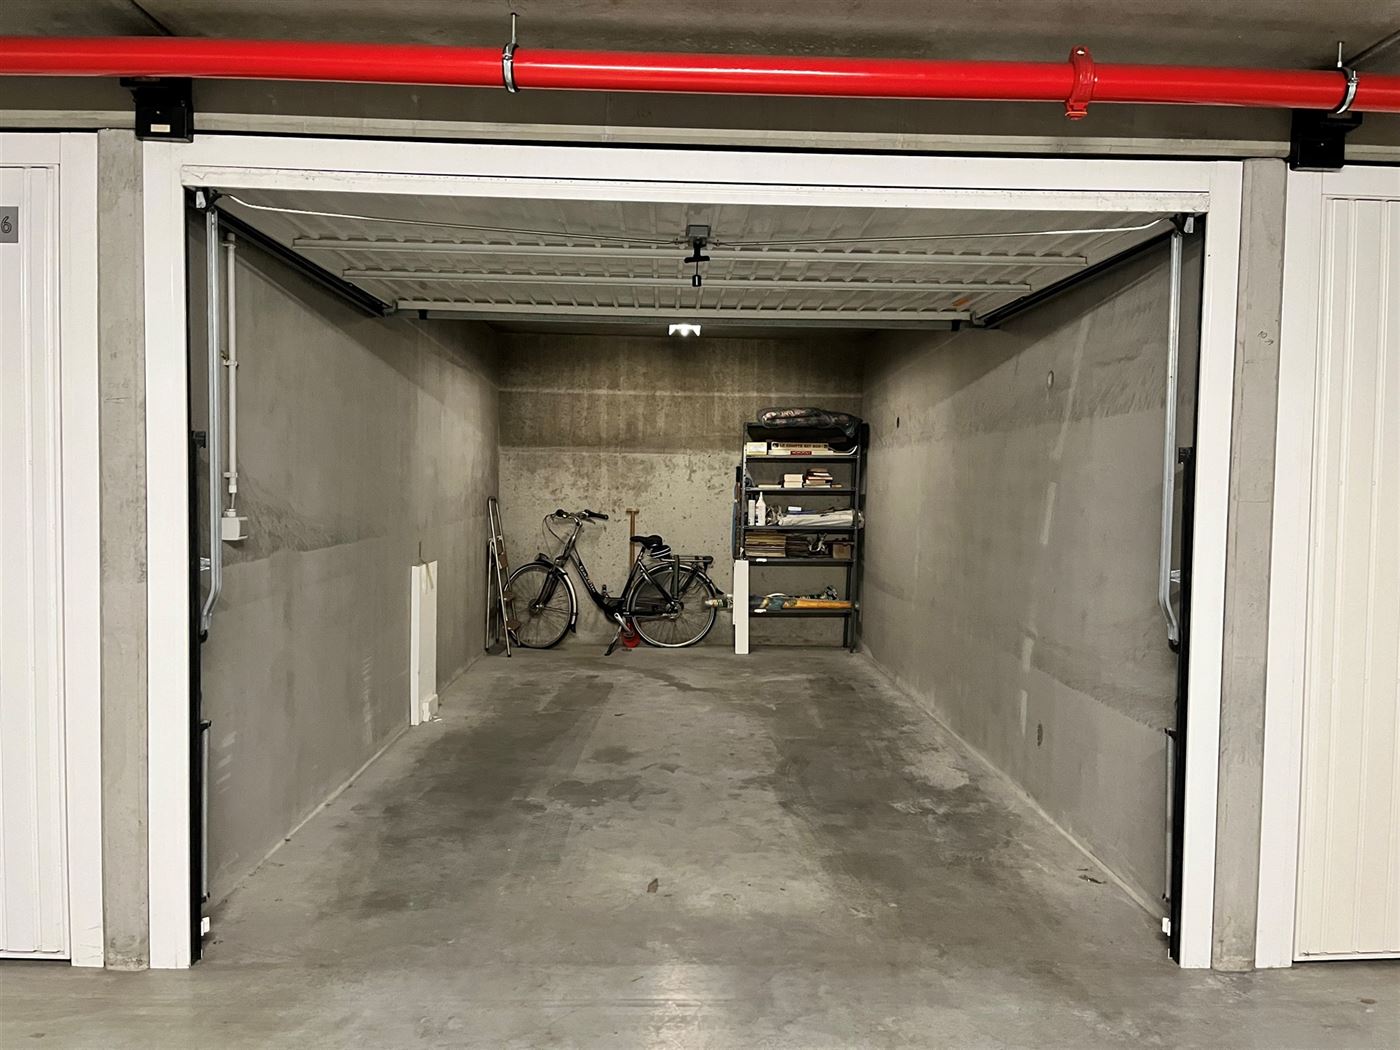 Garagecomplex Franslaan garage 2124 - Gesloten garagebox in de Franslaan - Gelegen op niveau -2 van het garagecomplex - Personenlift aanwezig - Volle ...